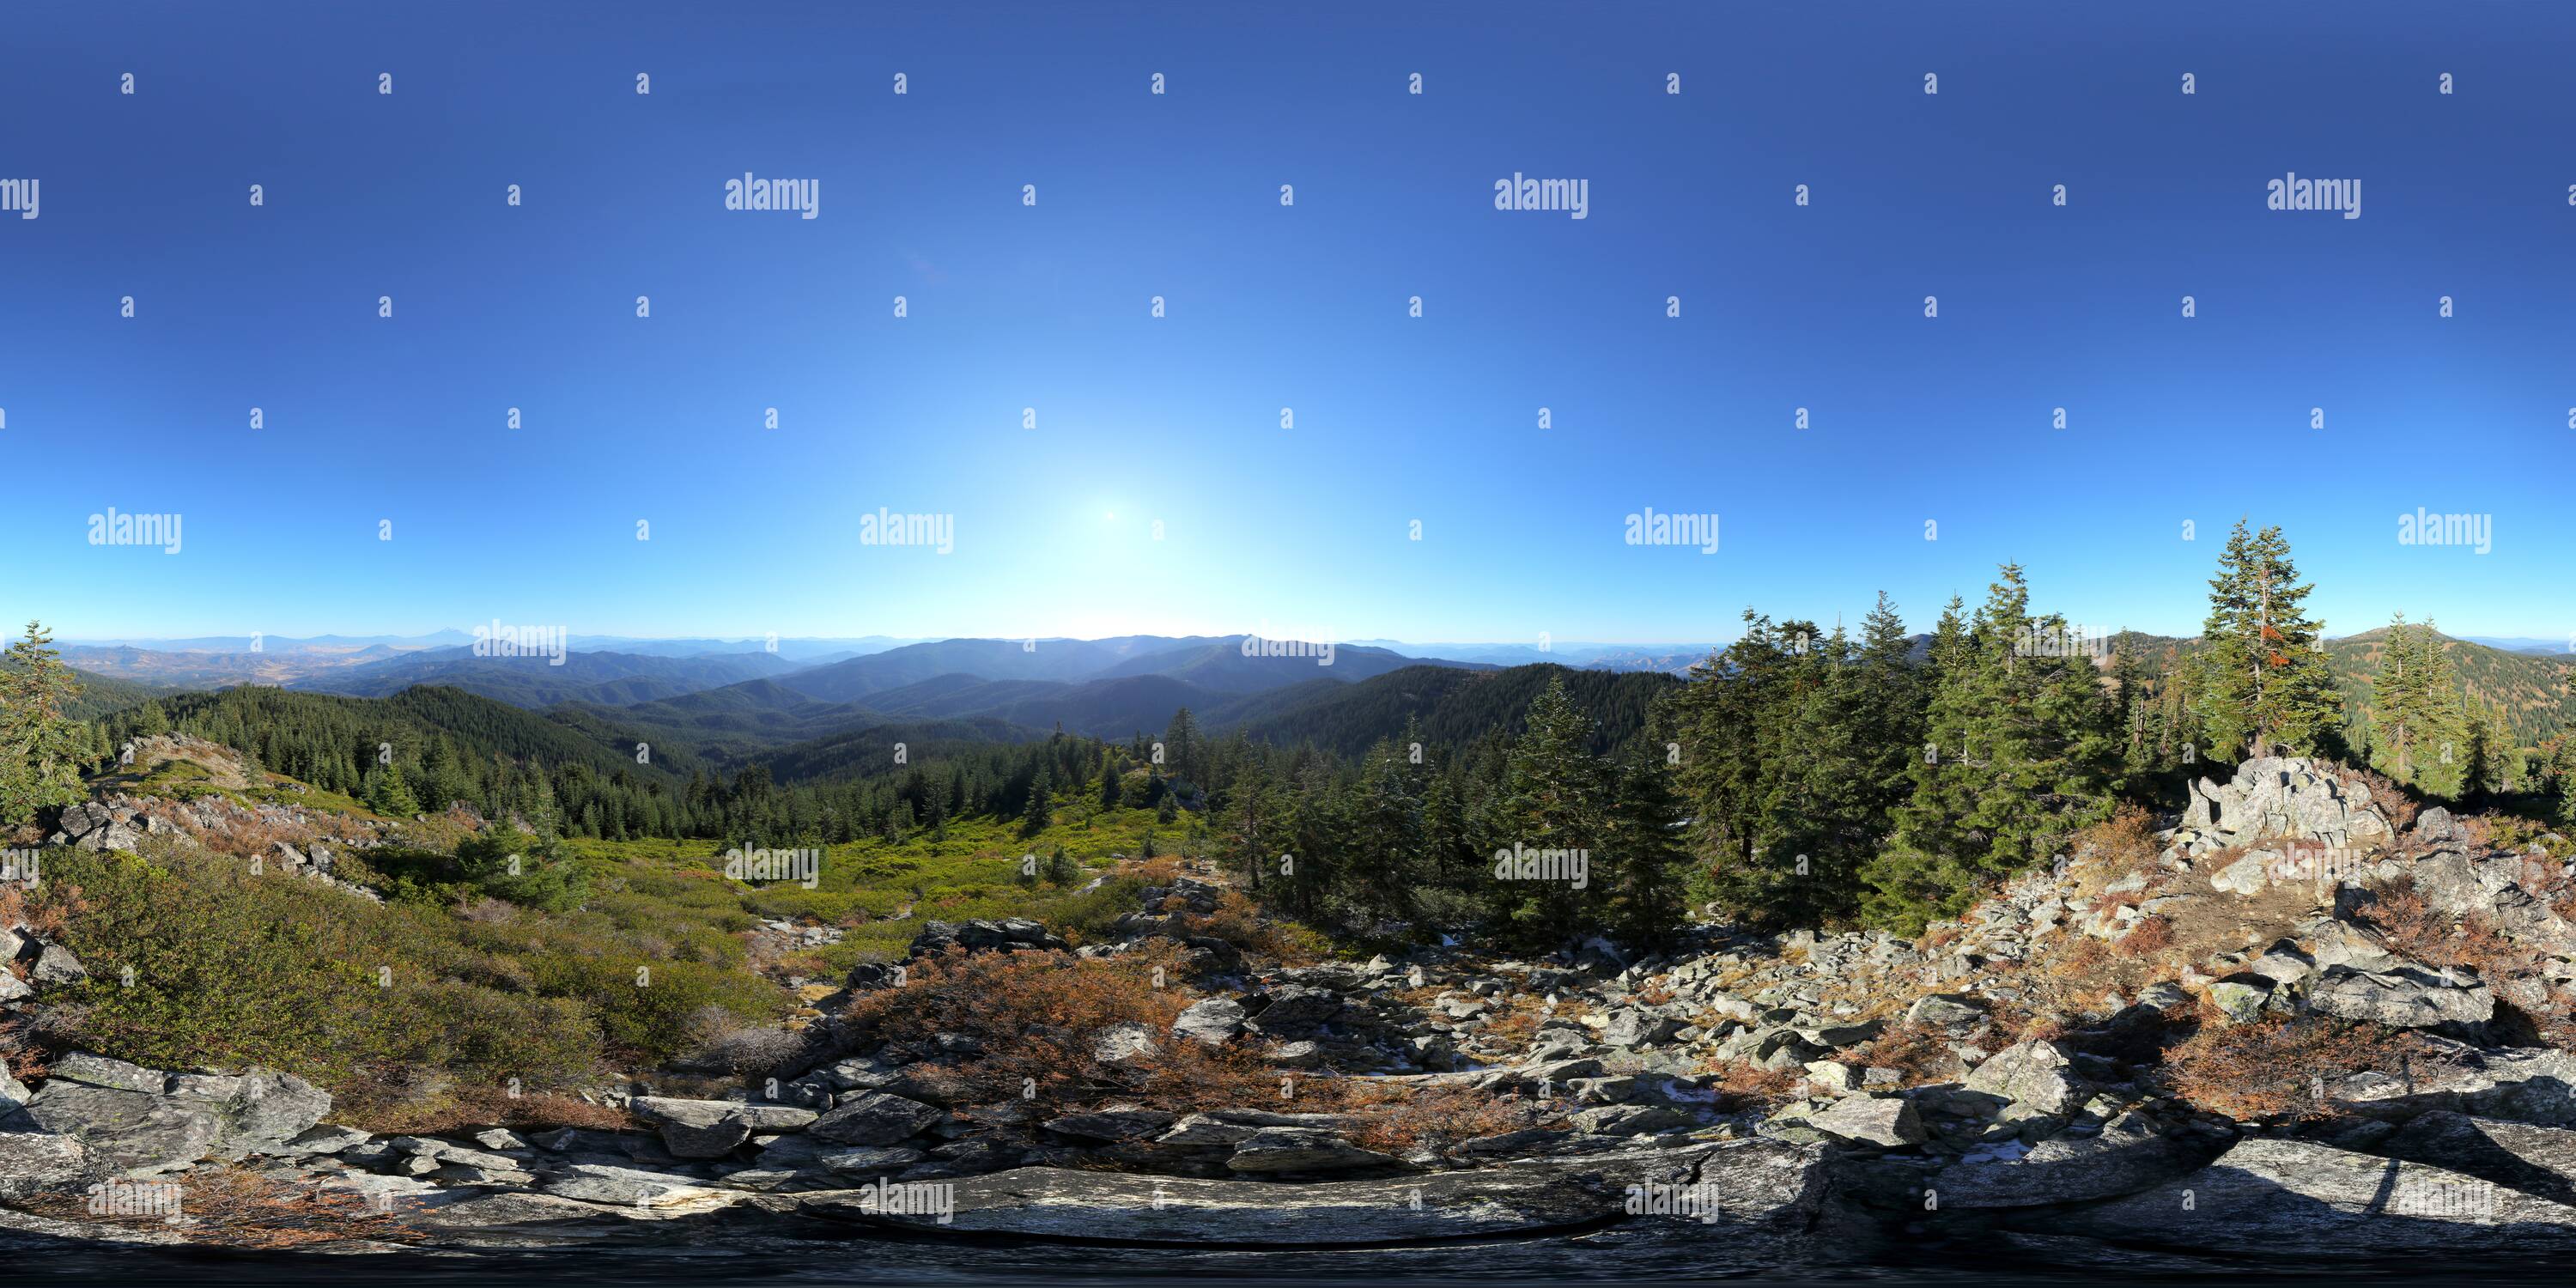 360 degree panoramic view of Siskiyou Peak (7149'/2179m) summit